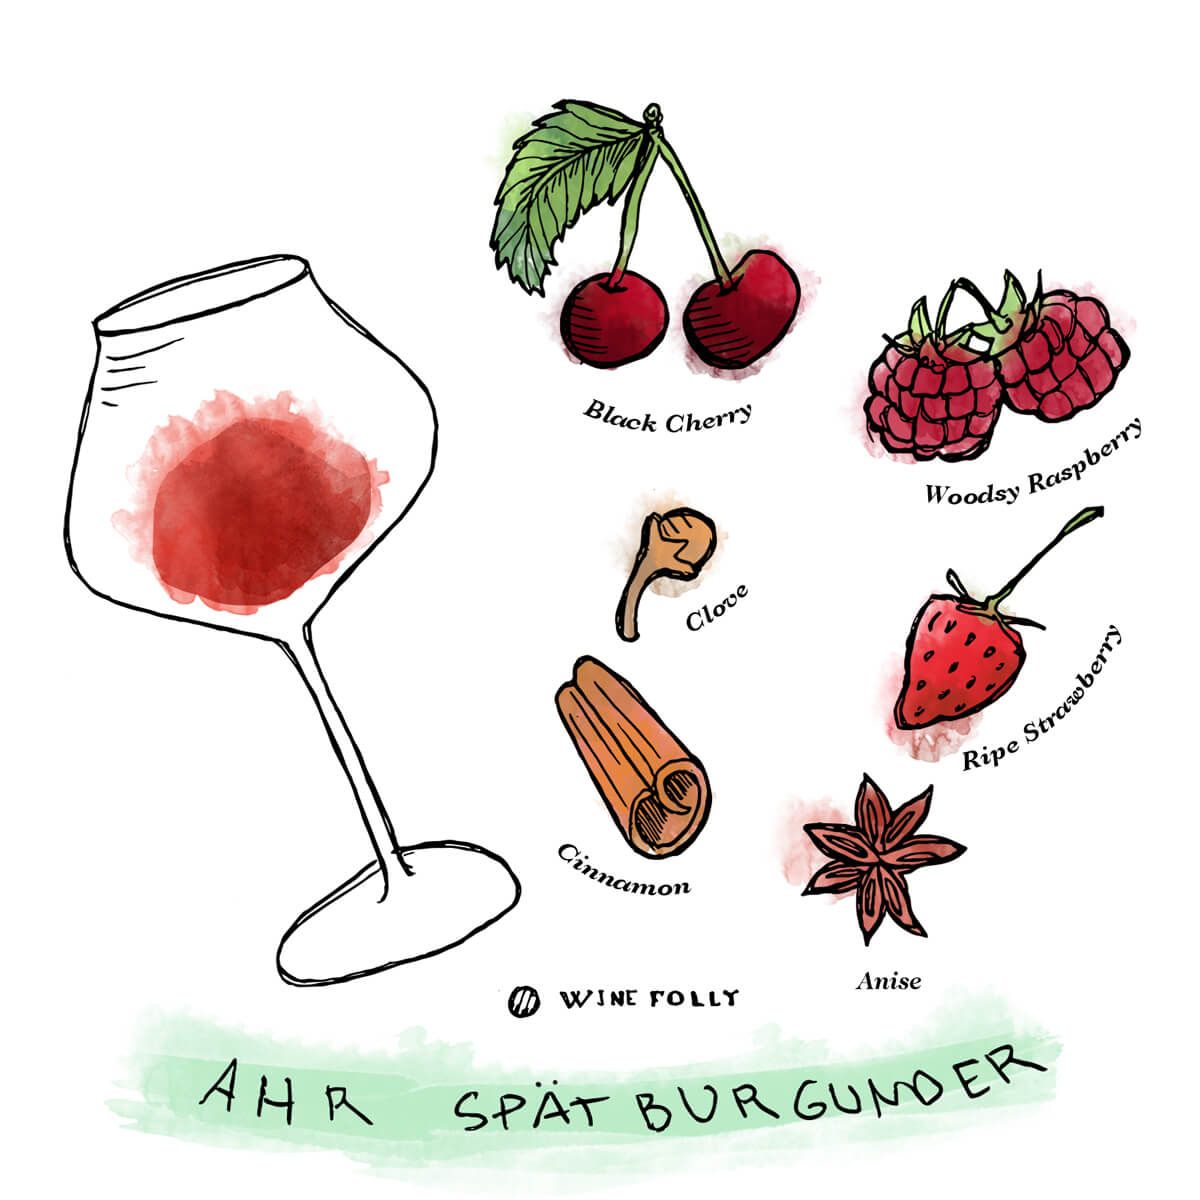 Ahr-Pinot-Noir-Spatburgunder-Tasting-Notes-WineFolly-Illustration